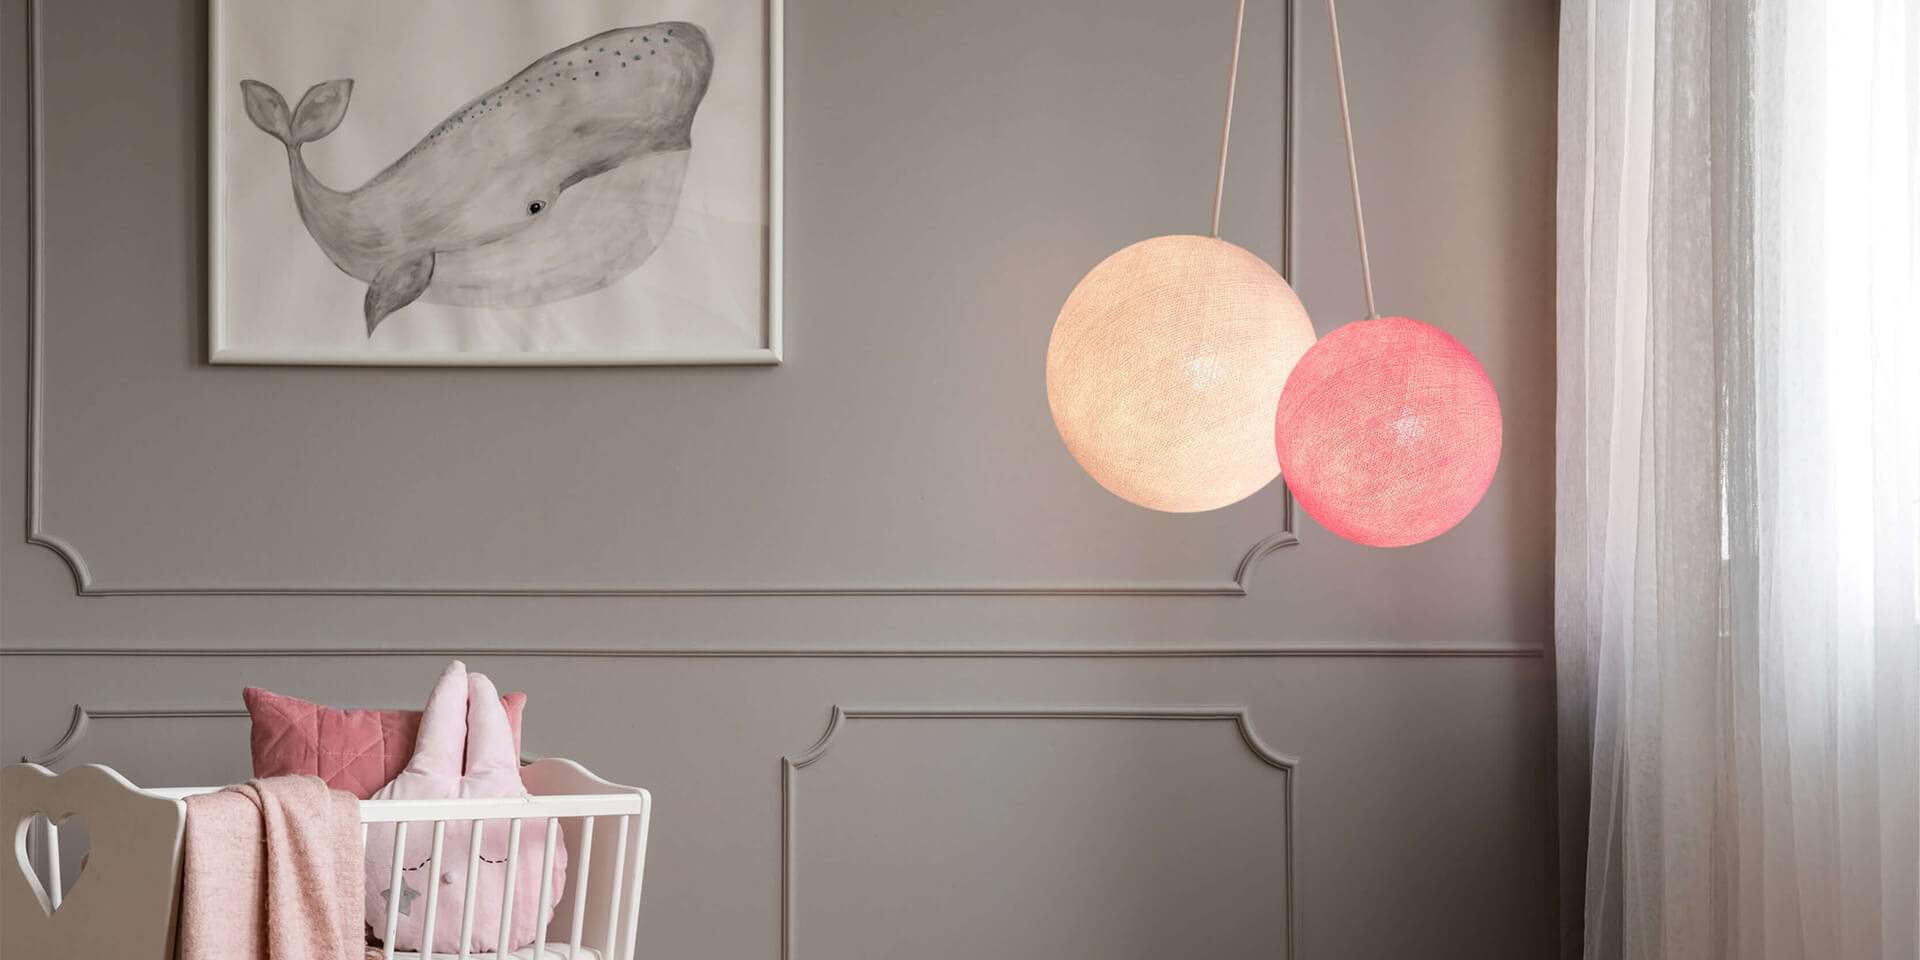 LED Deckenlampe mit 2 Kugeln aus Baumwolle. Pendelleuche in Weiß und Rosa. Höhenverstellbare Hängelampe, ideal für Kinderzimmer und Babyzimmer. Dimmbare Deckenleuchte.